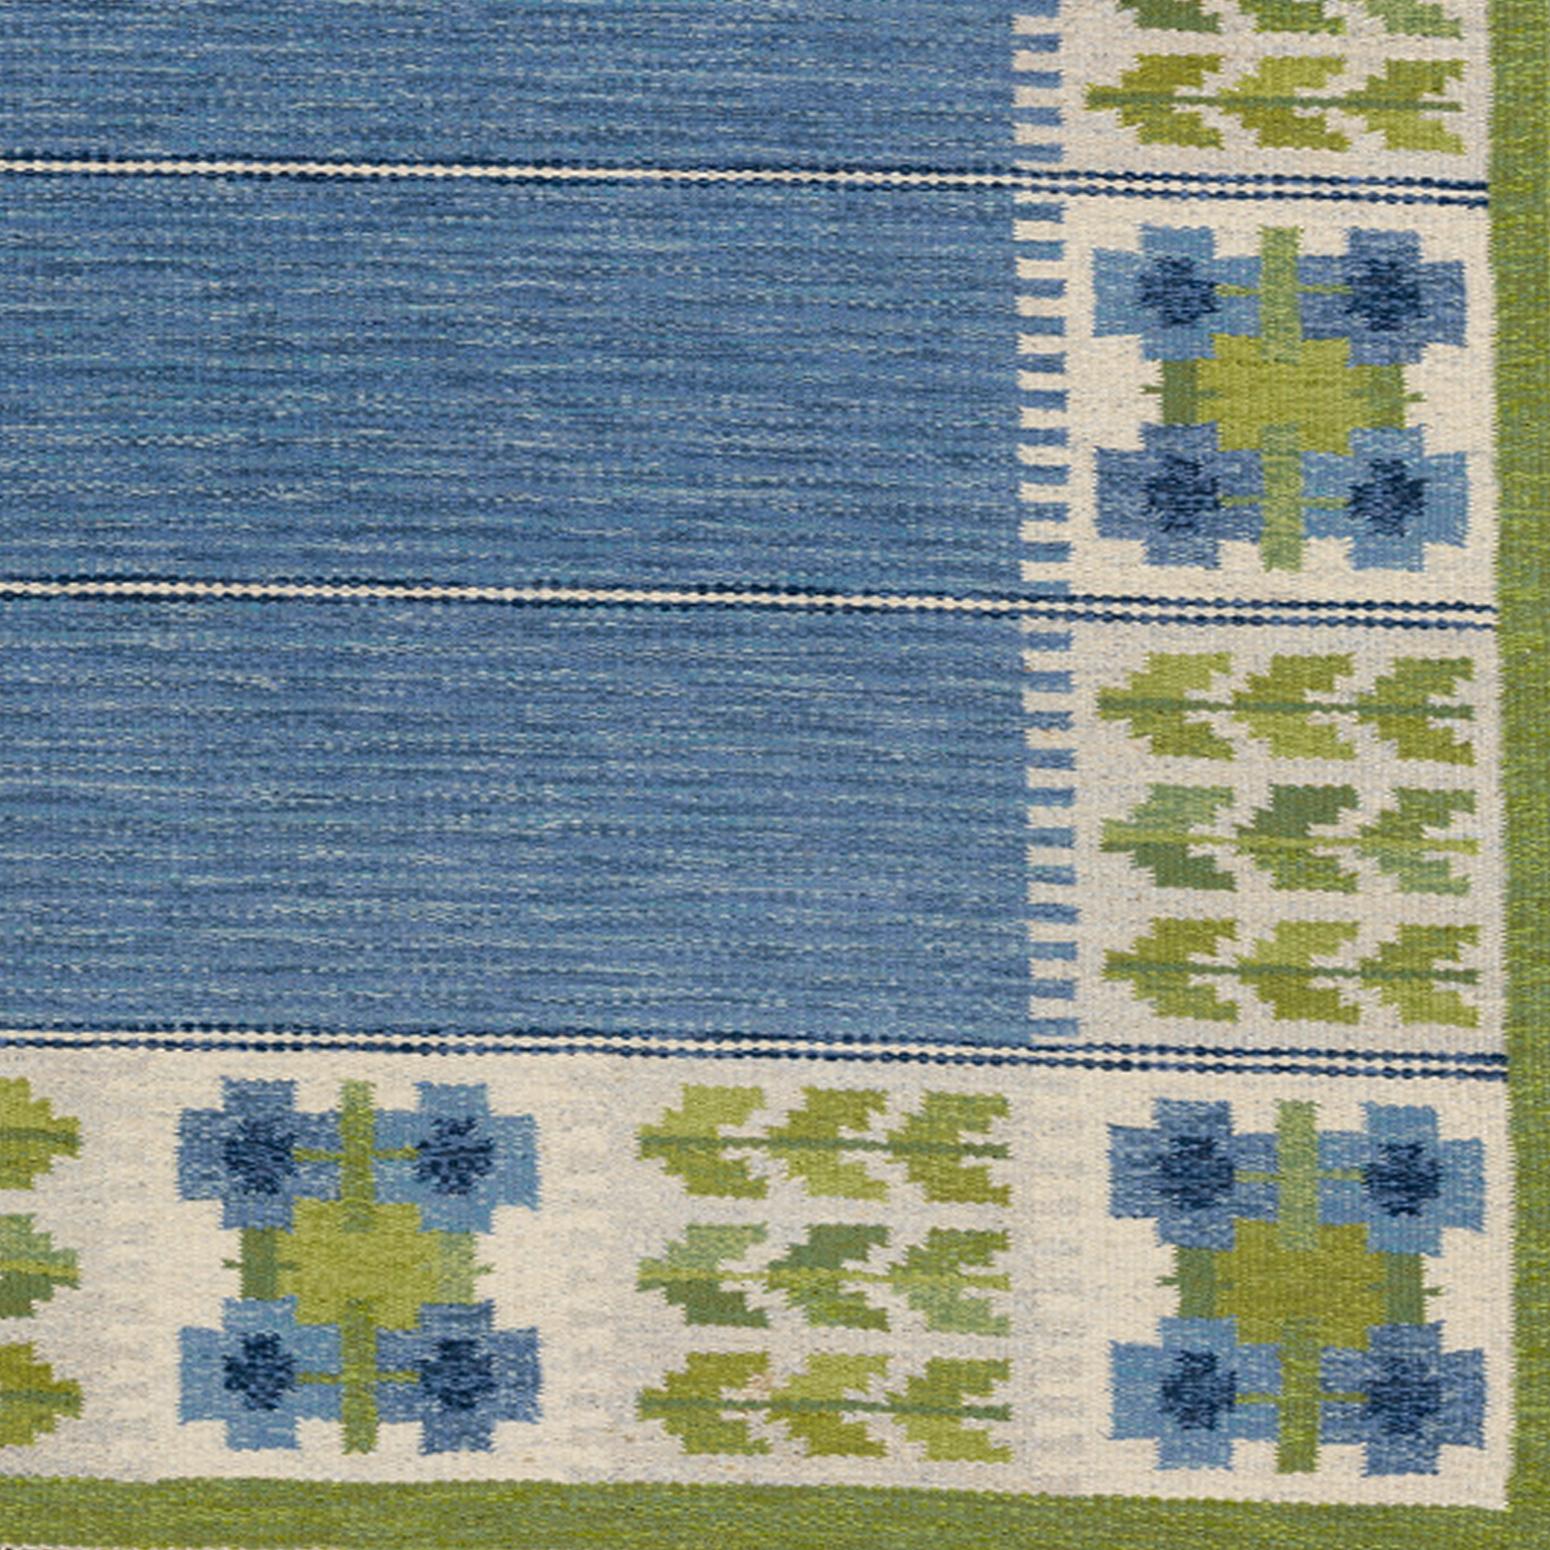 Hand-Woven Scandinavian Modern Flat-Weave in Blue and Green by Berit Woelfer 'Koenig'